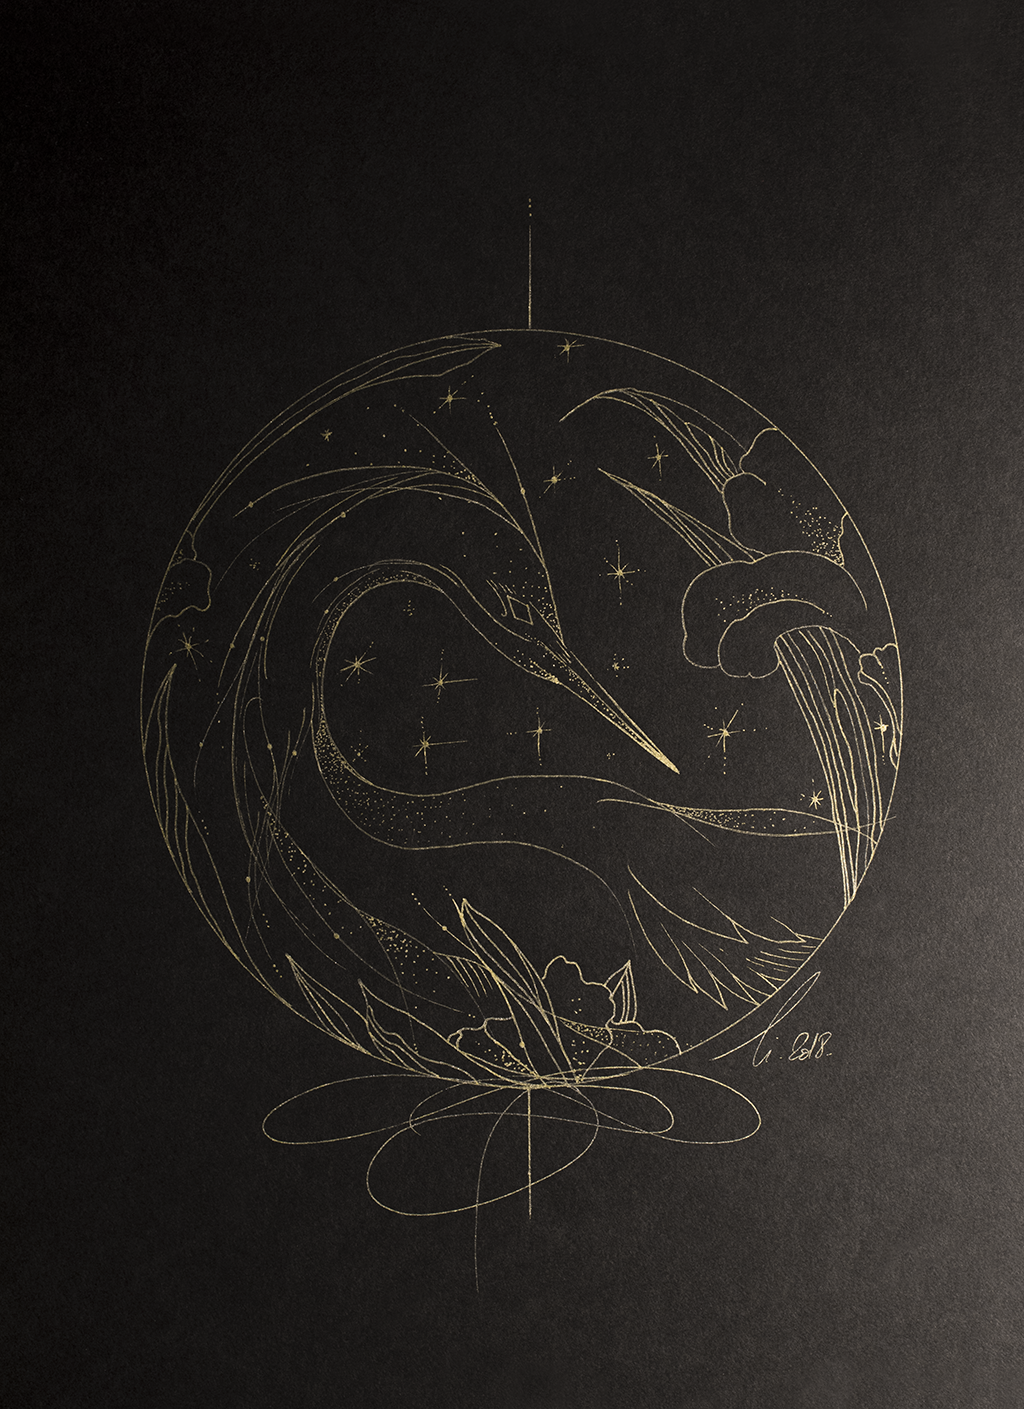 La grue et les étoiles, dessin de l'oiseau échassier migrateur de nuit avec des étoiles dorées